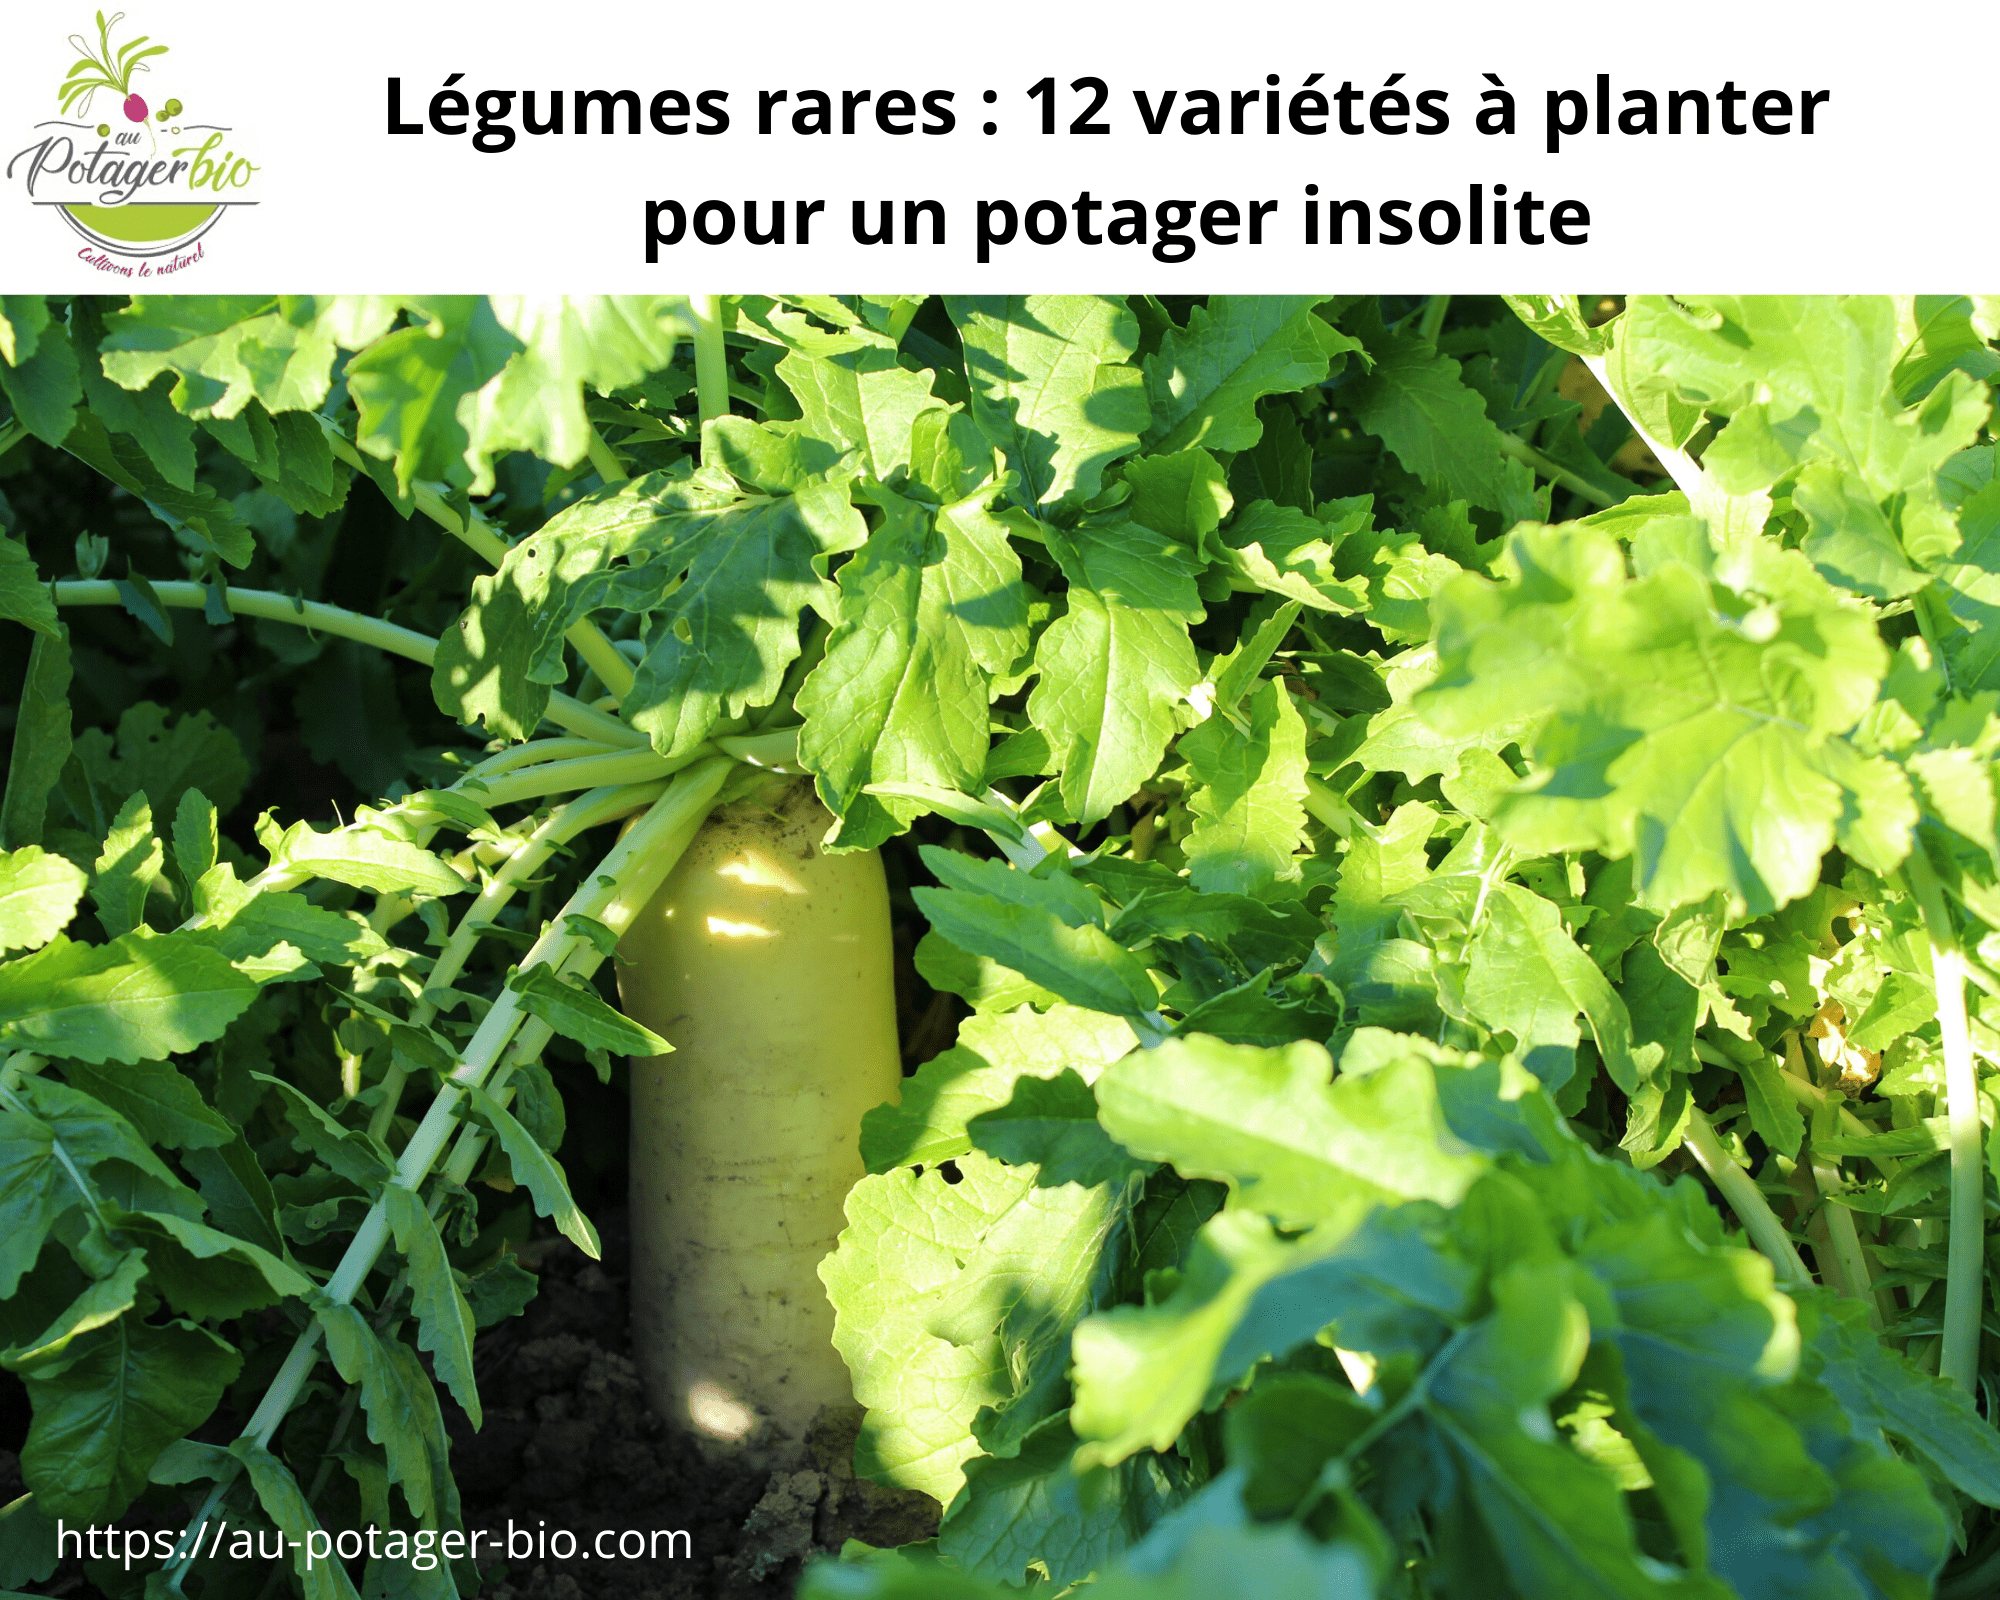 12 variétés de légumes rares pour un potager insolite.